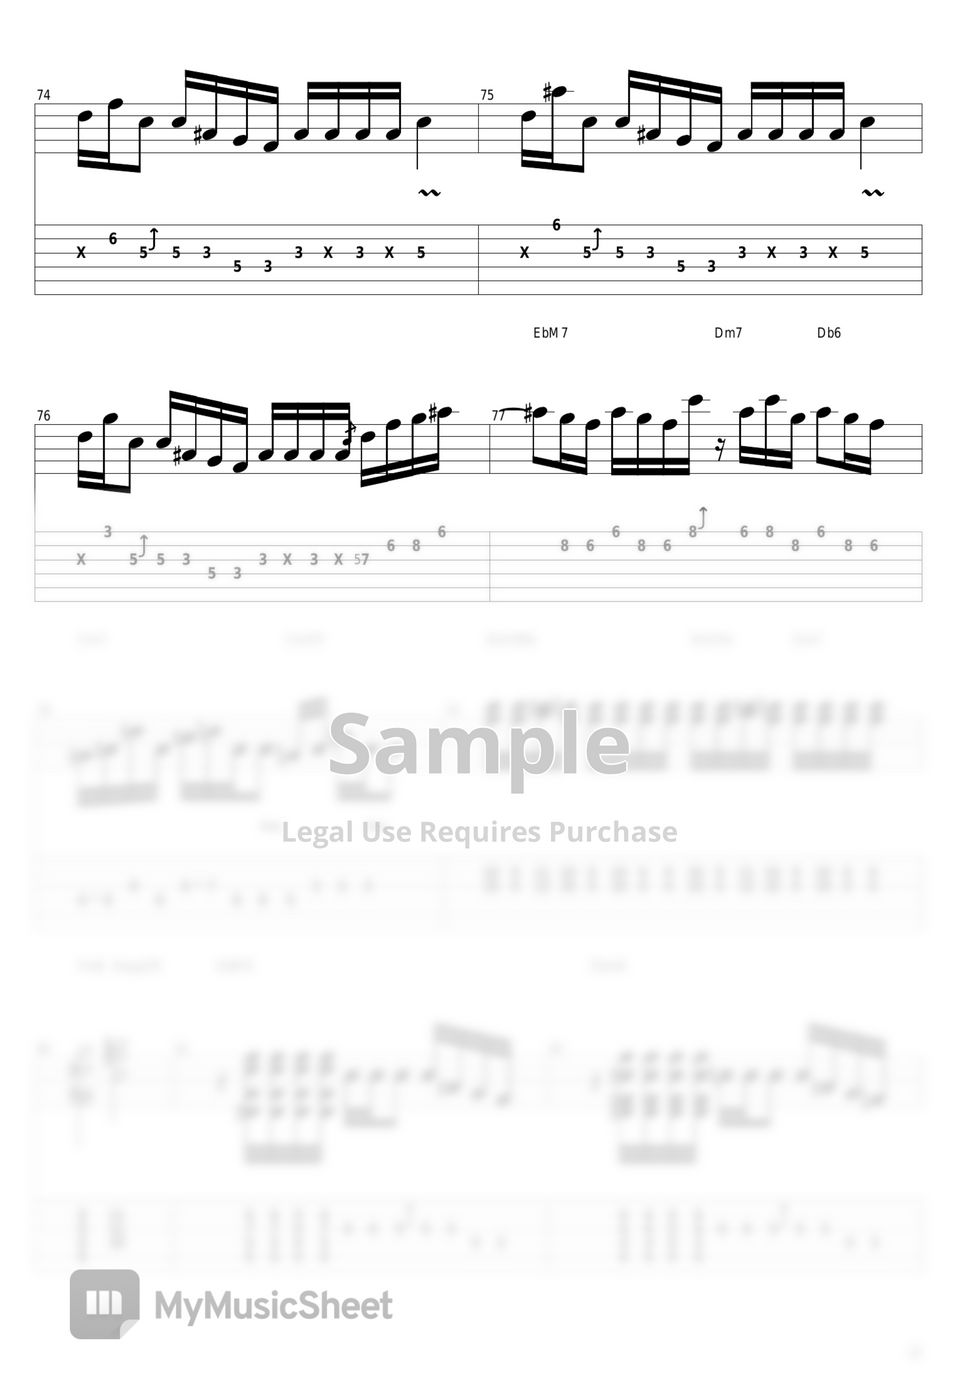 山下達郎 - Music Book Tab + 1staff by guitar cover with tab